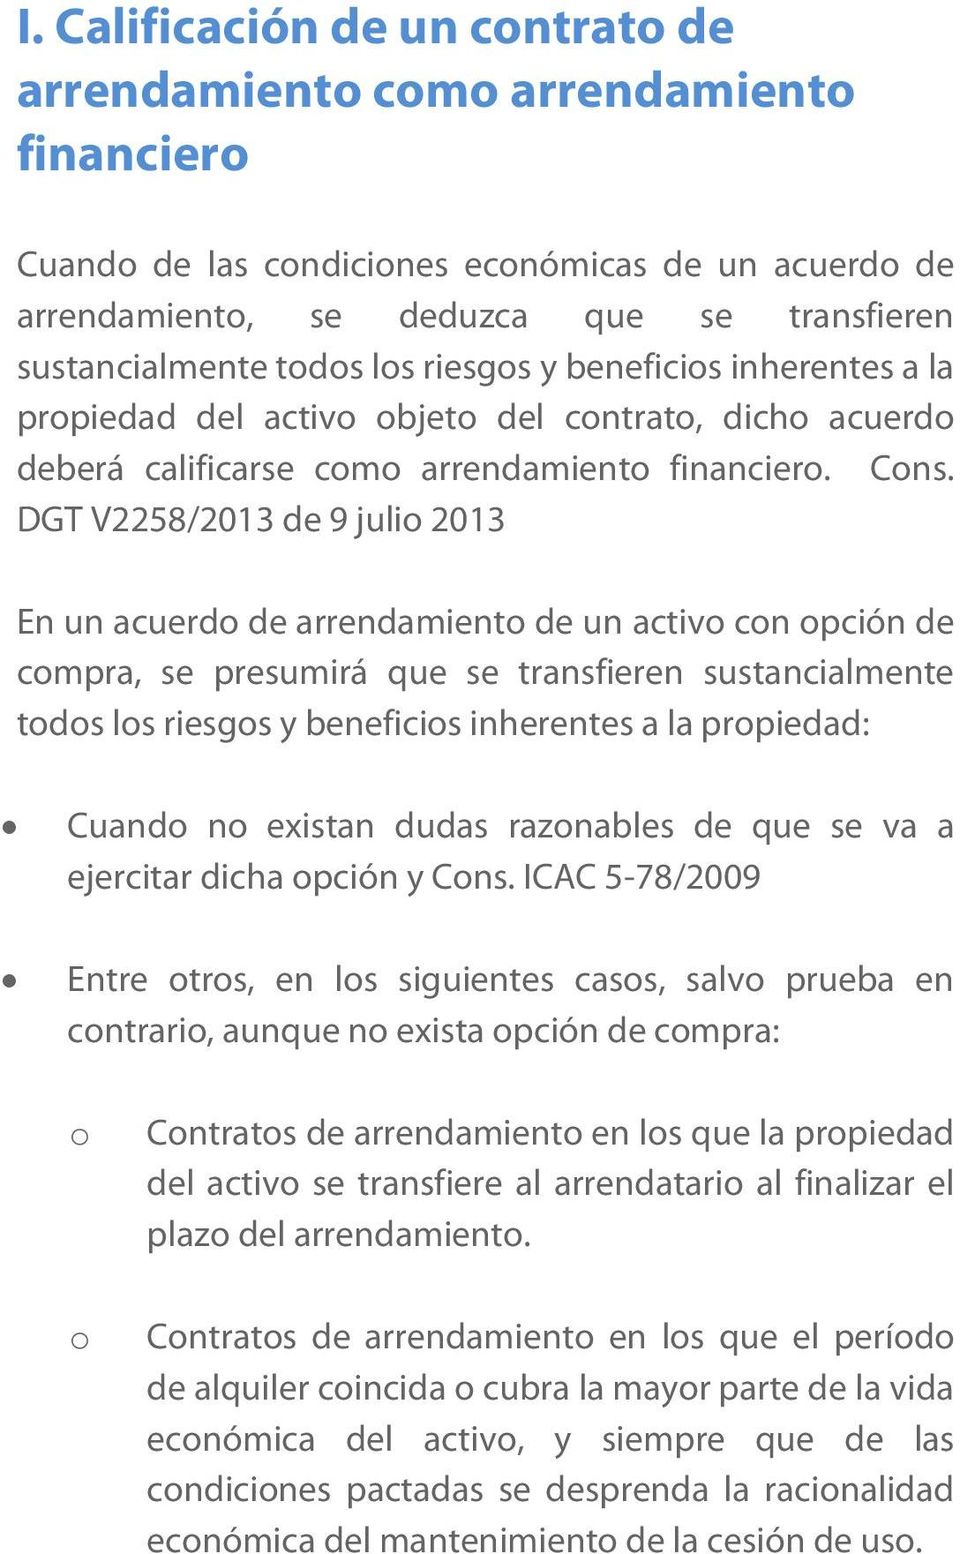 DGT V2258/2013 de 9 julio 2013 En un acuerdo de arrendamiento de un activo con opción de compra, se presumirá que se transfieren sustancialmente todos los riesgos y beneficios inherentes a la